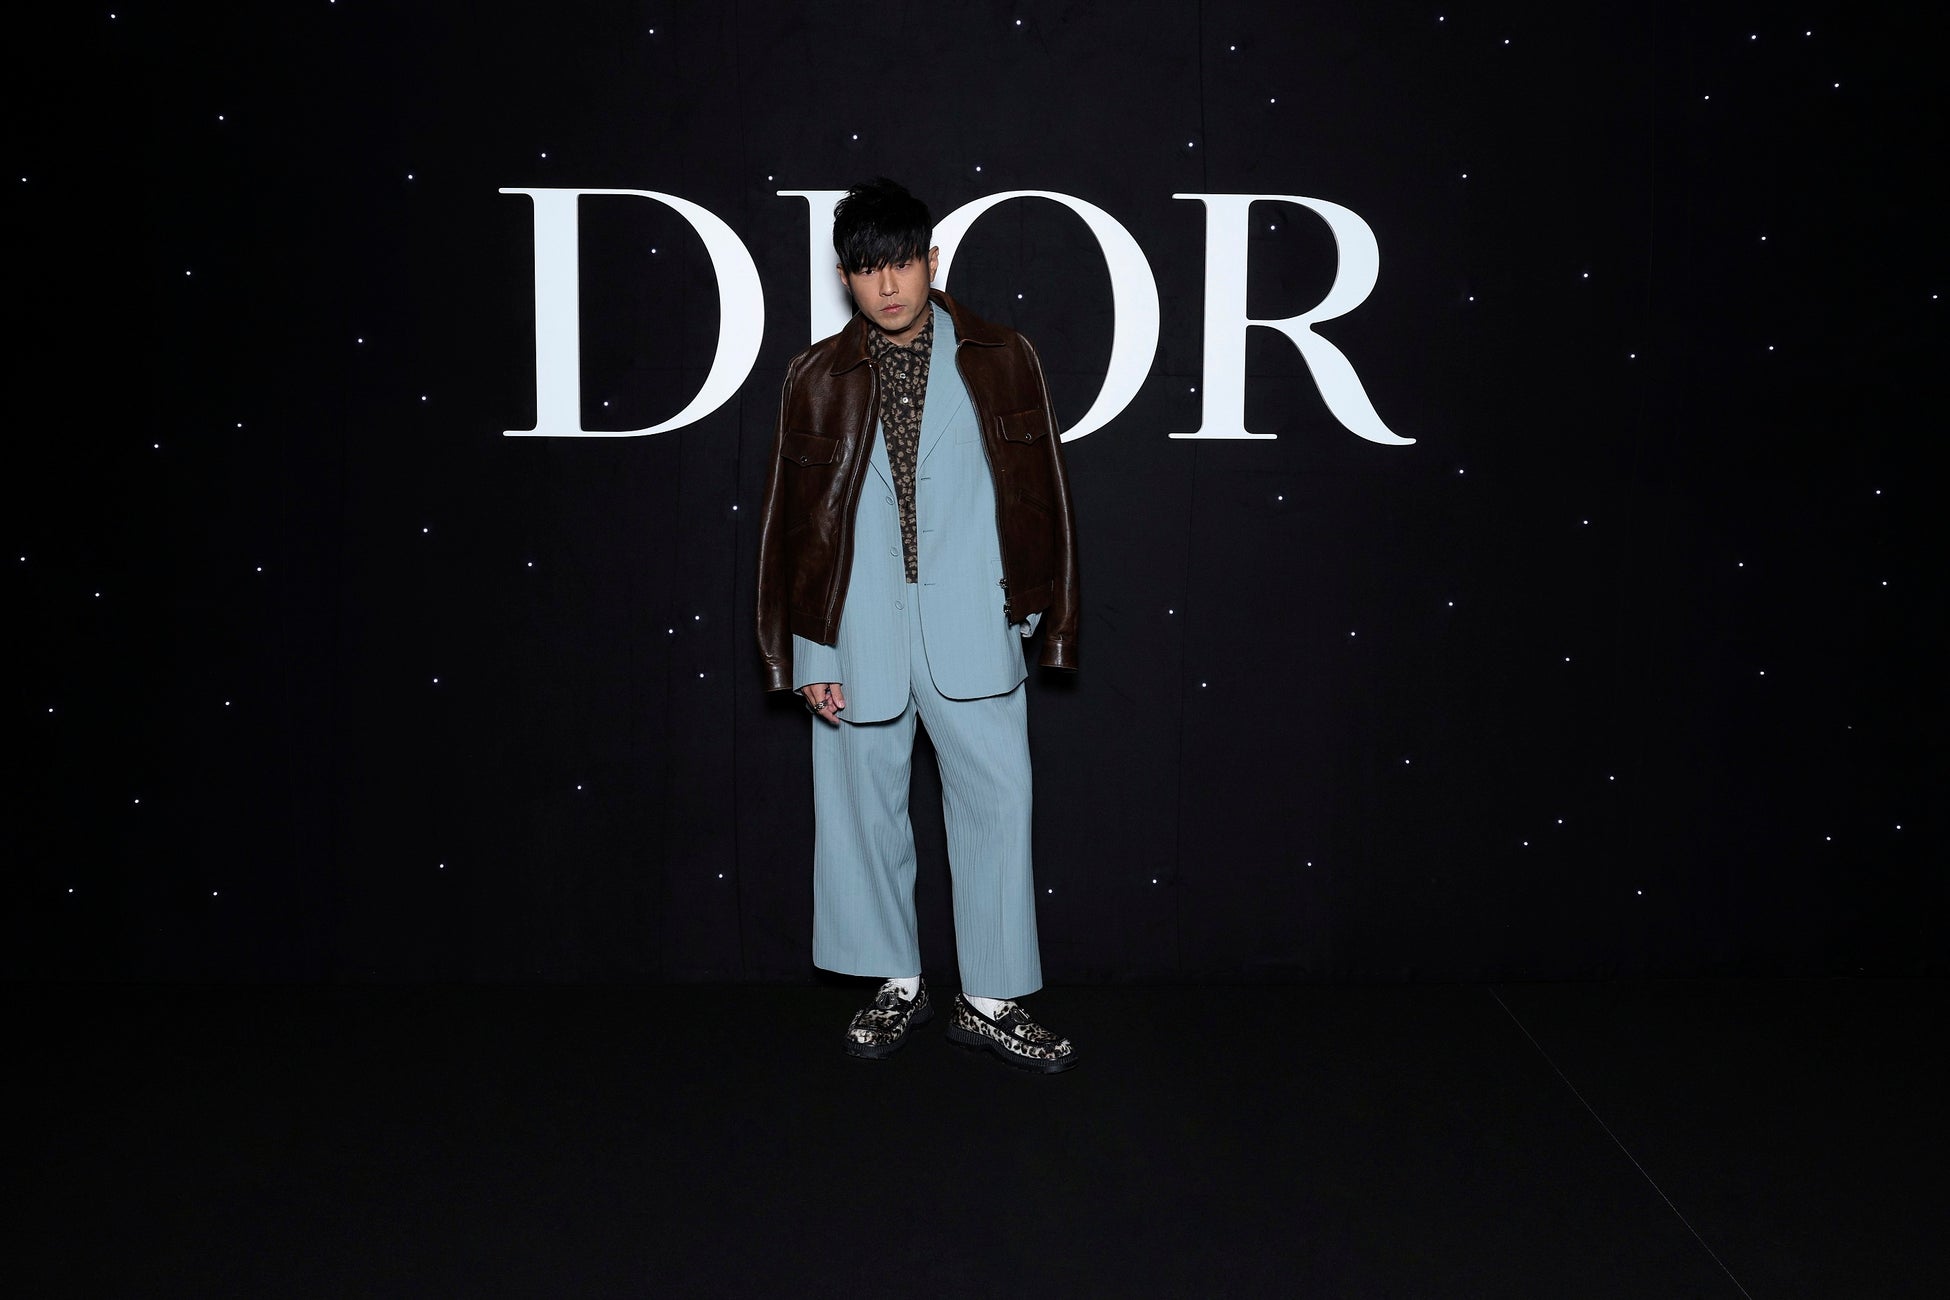 Jay Chou in Dior